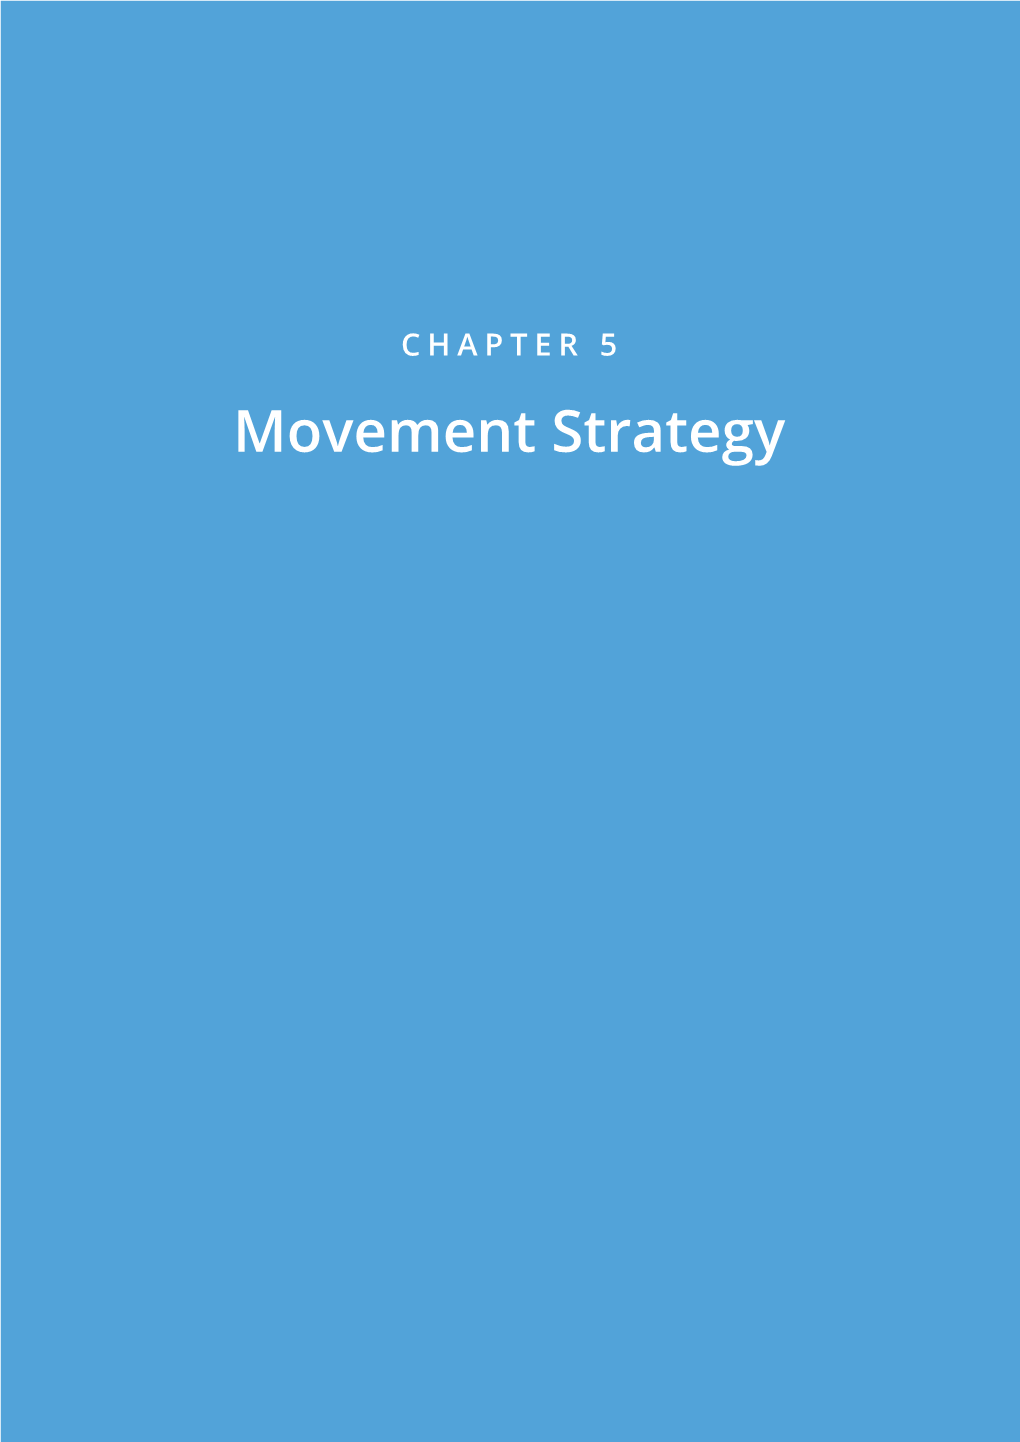 Movement Strategy 2 Movement Strategy